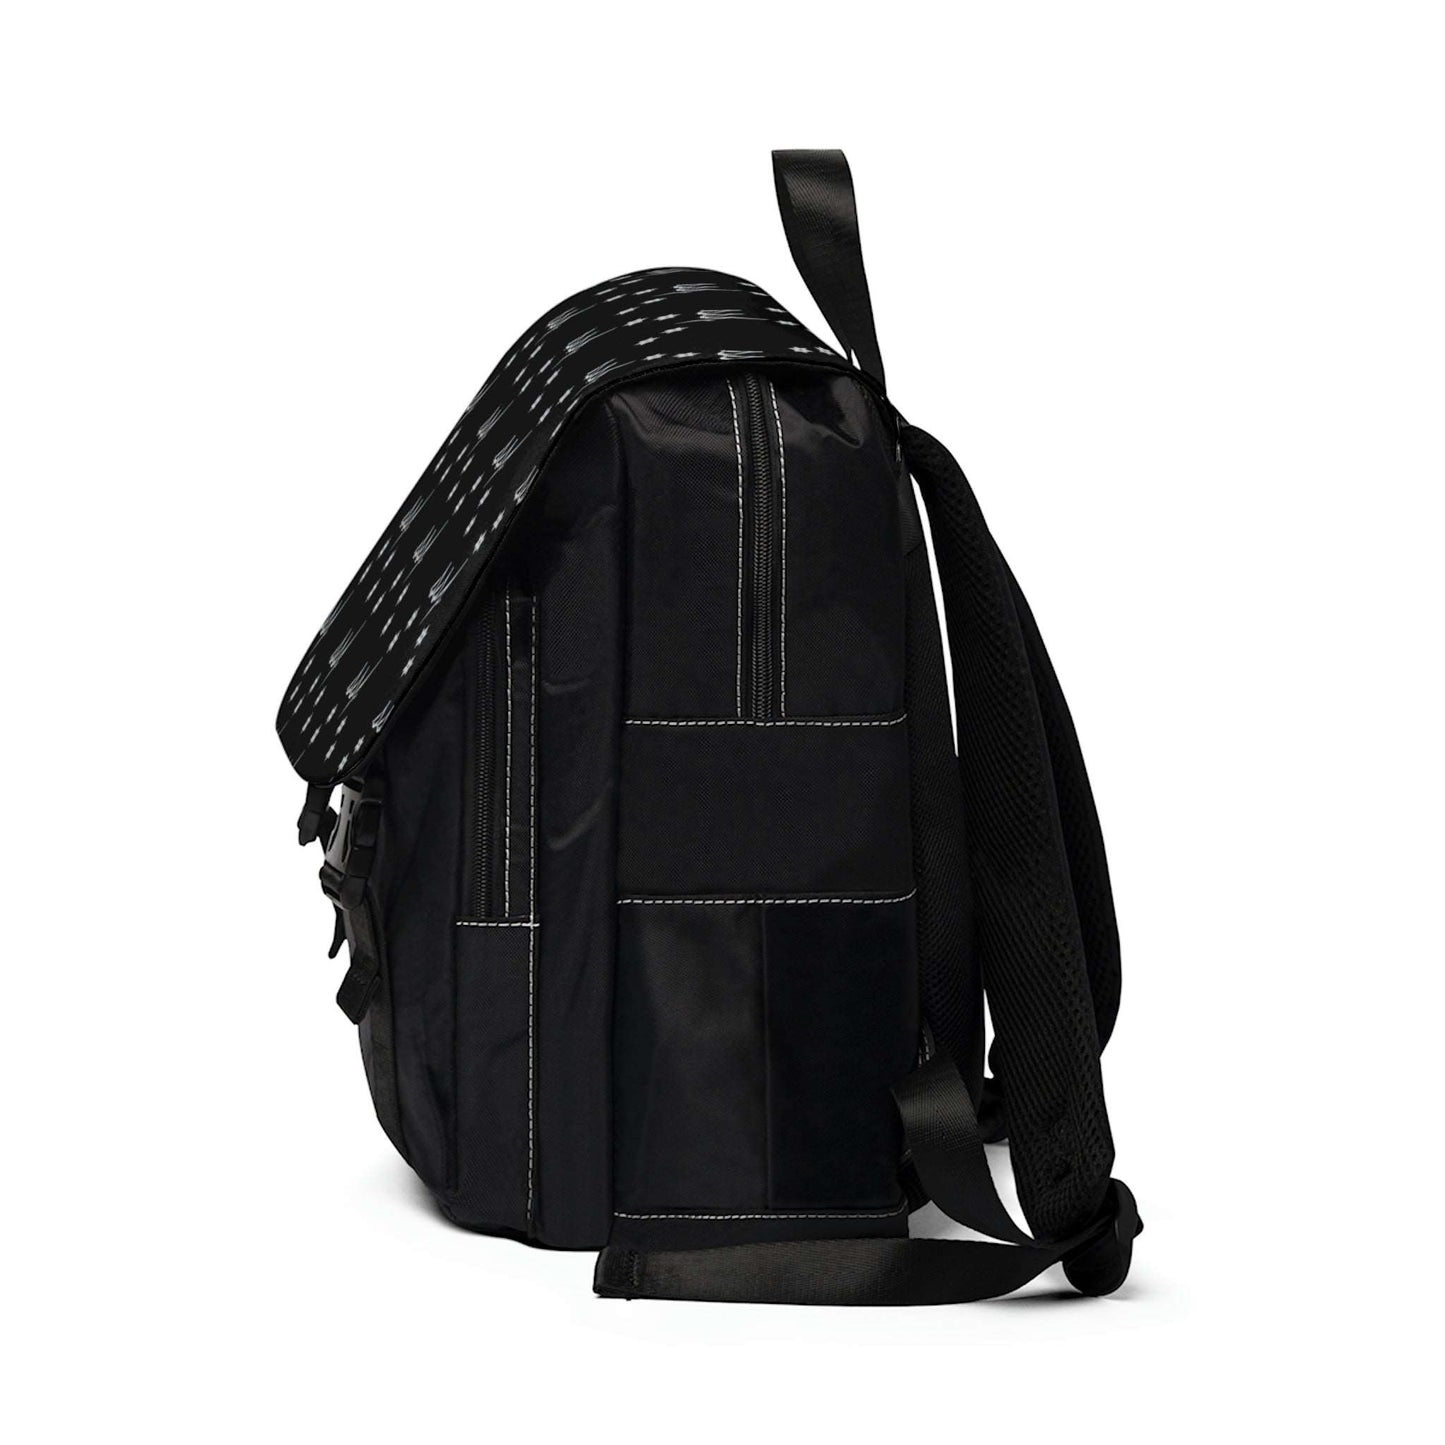 SSF Backpack in Platinum